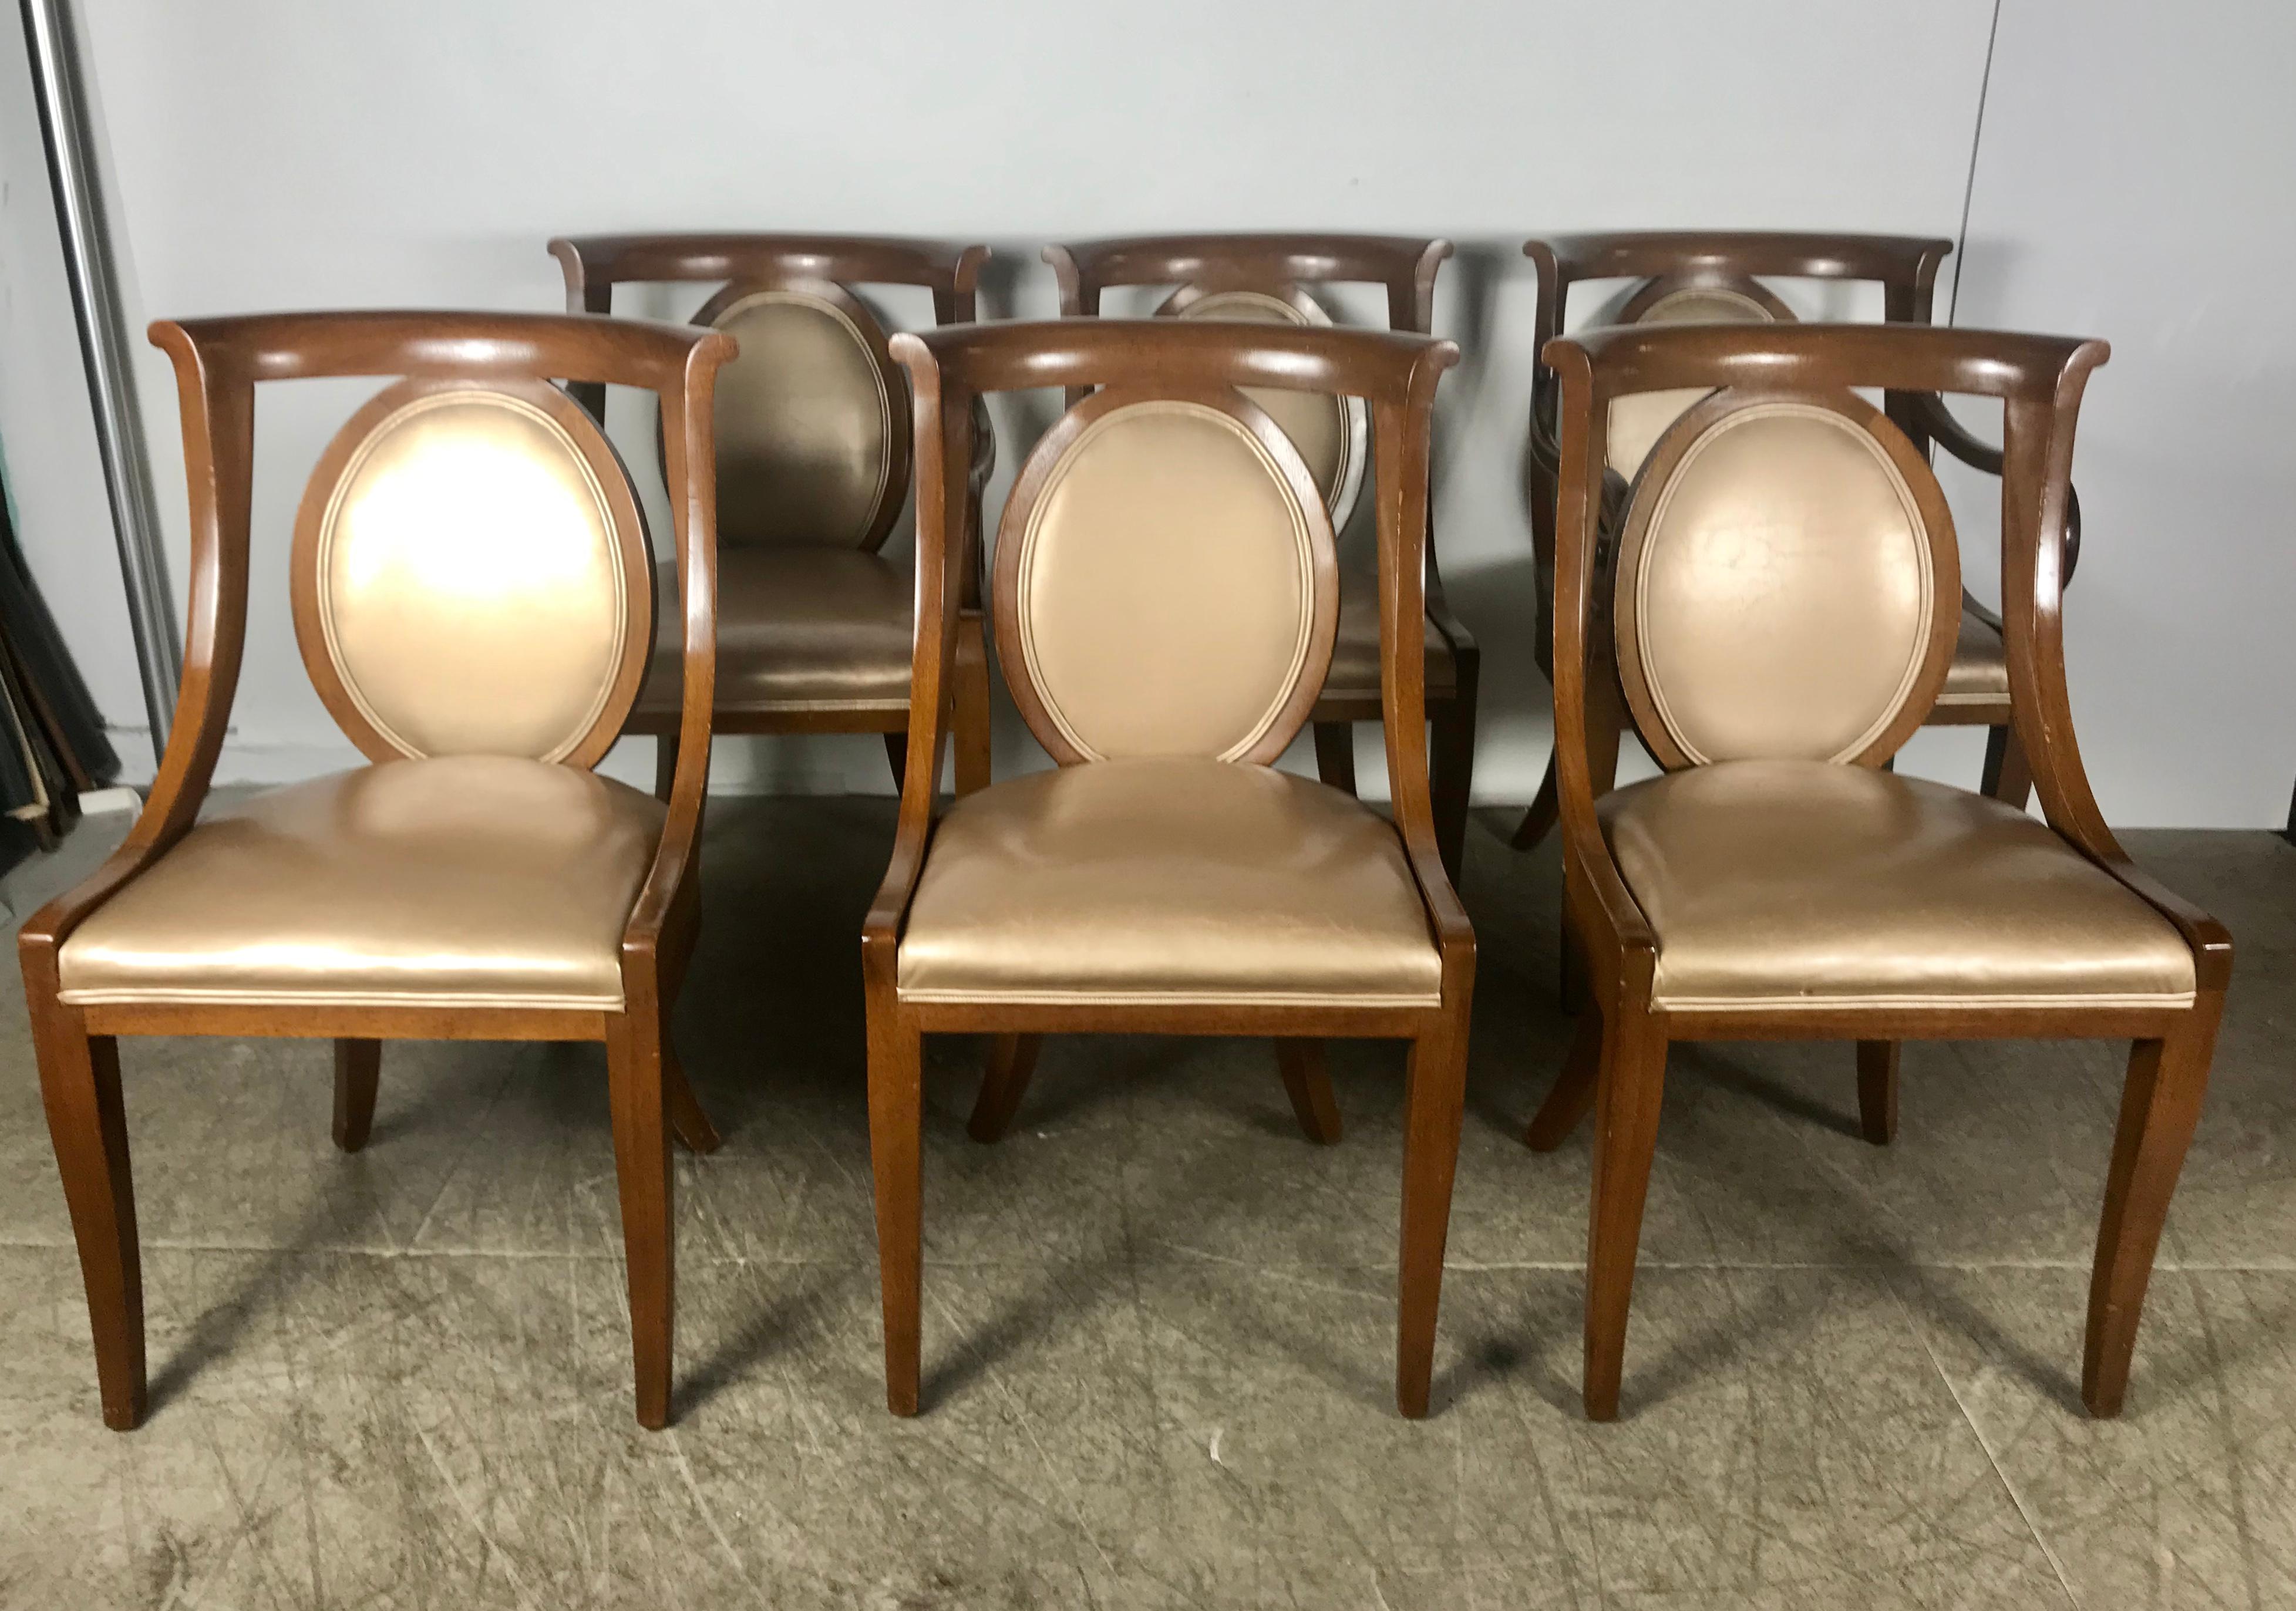 Ensemble classique de 6 chaises de salle à manger Regency par Bethlehem Furniture Manufacturing Corp. Merveilleux design, l'ensemble comprend 2 fauteuils (capitaines) de 21